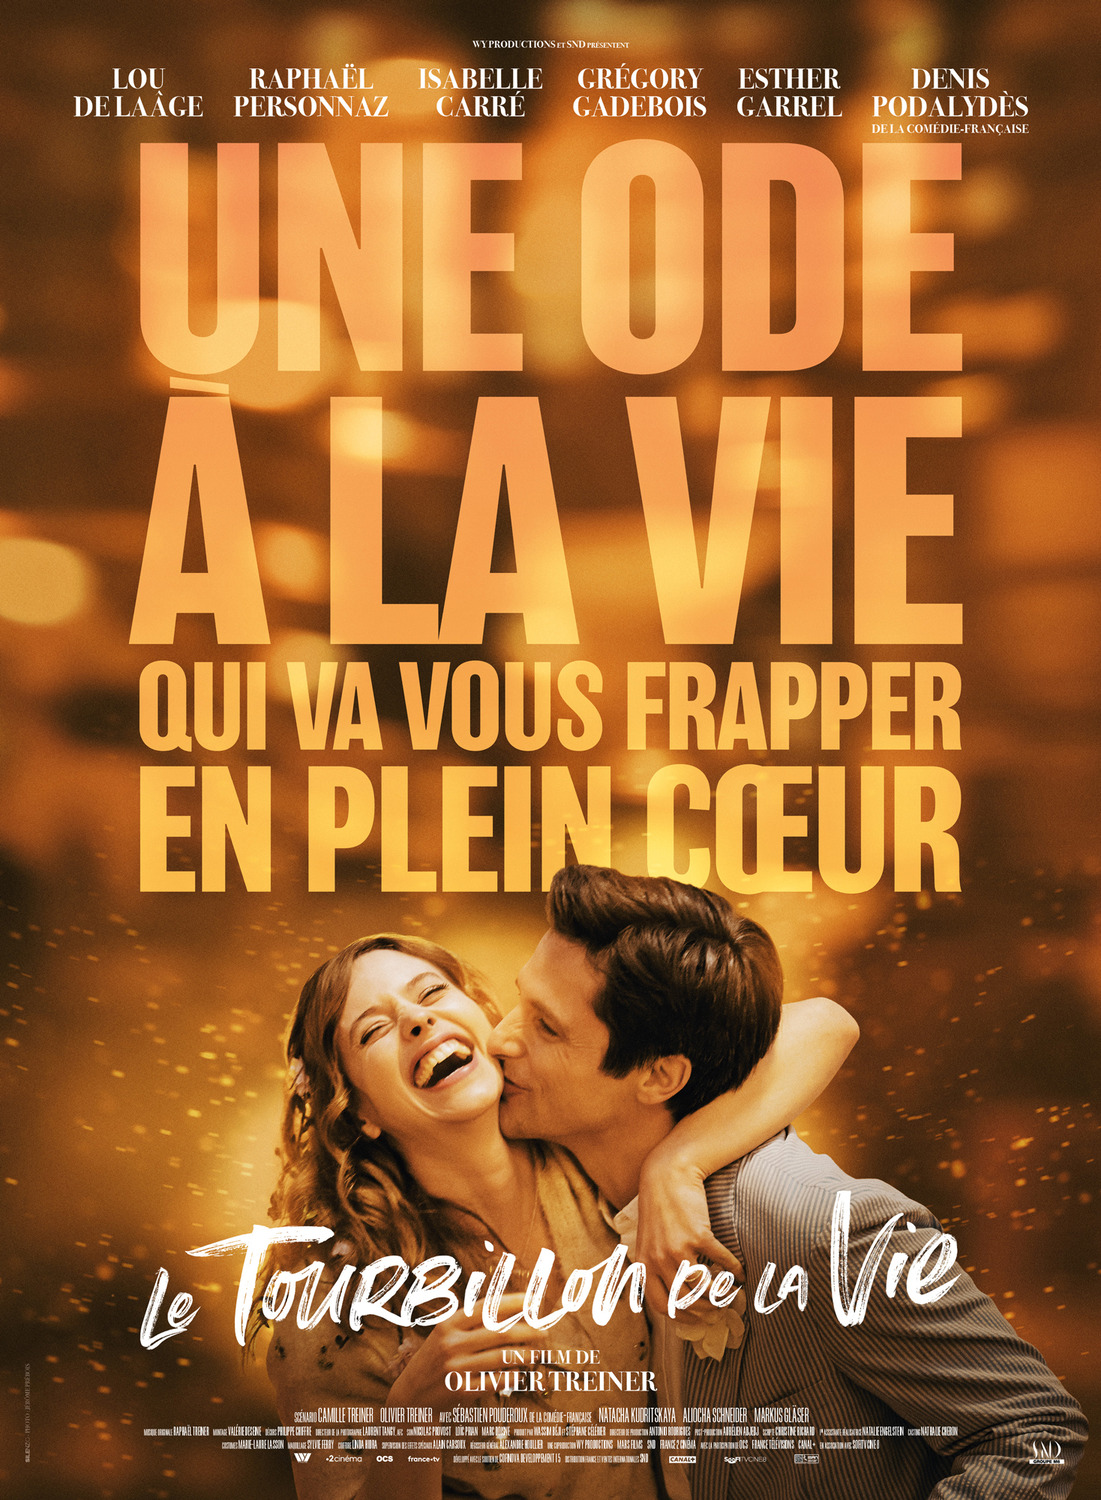 Extra Large Movie Poster Image for Le tourbillon de la vie (#5 of 5)